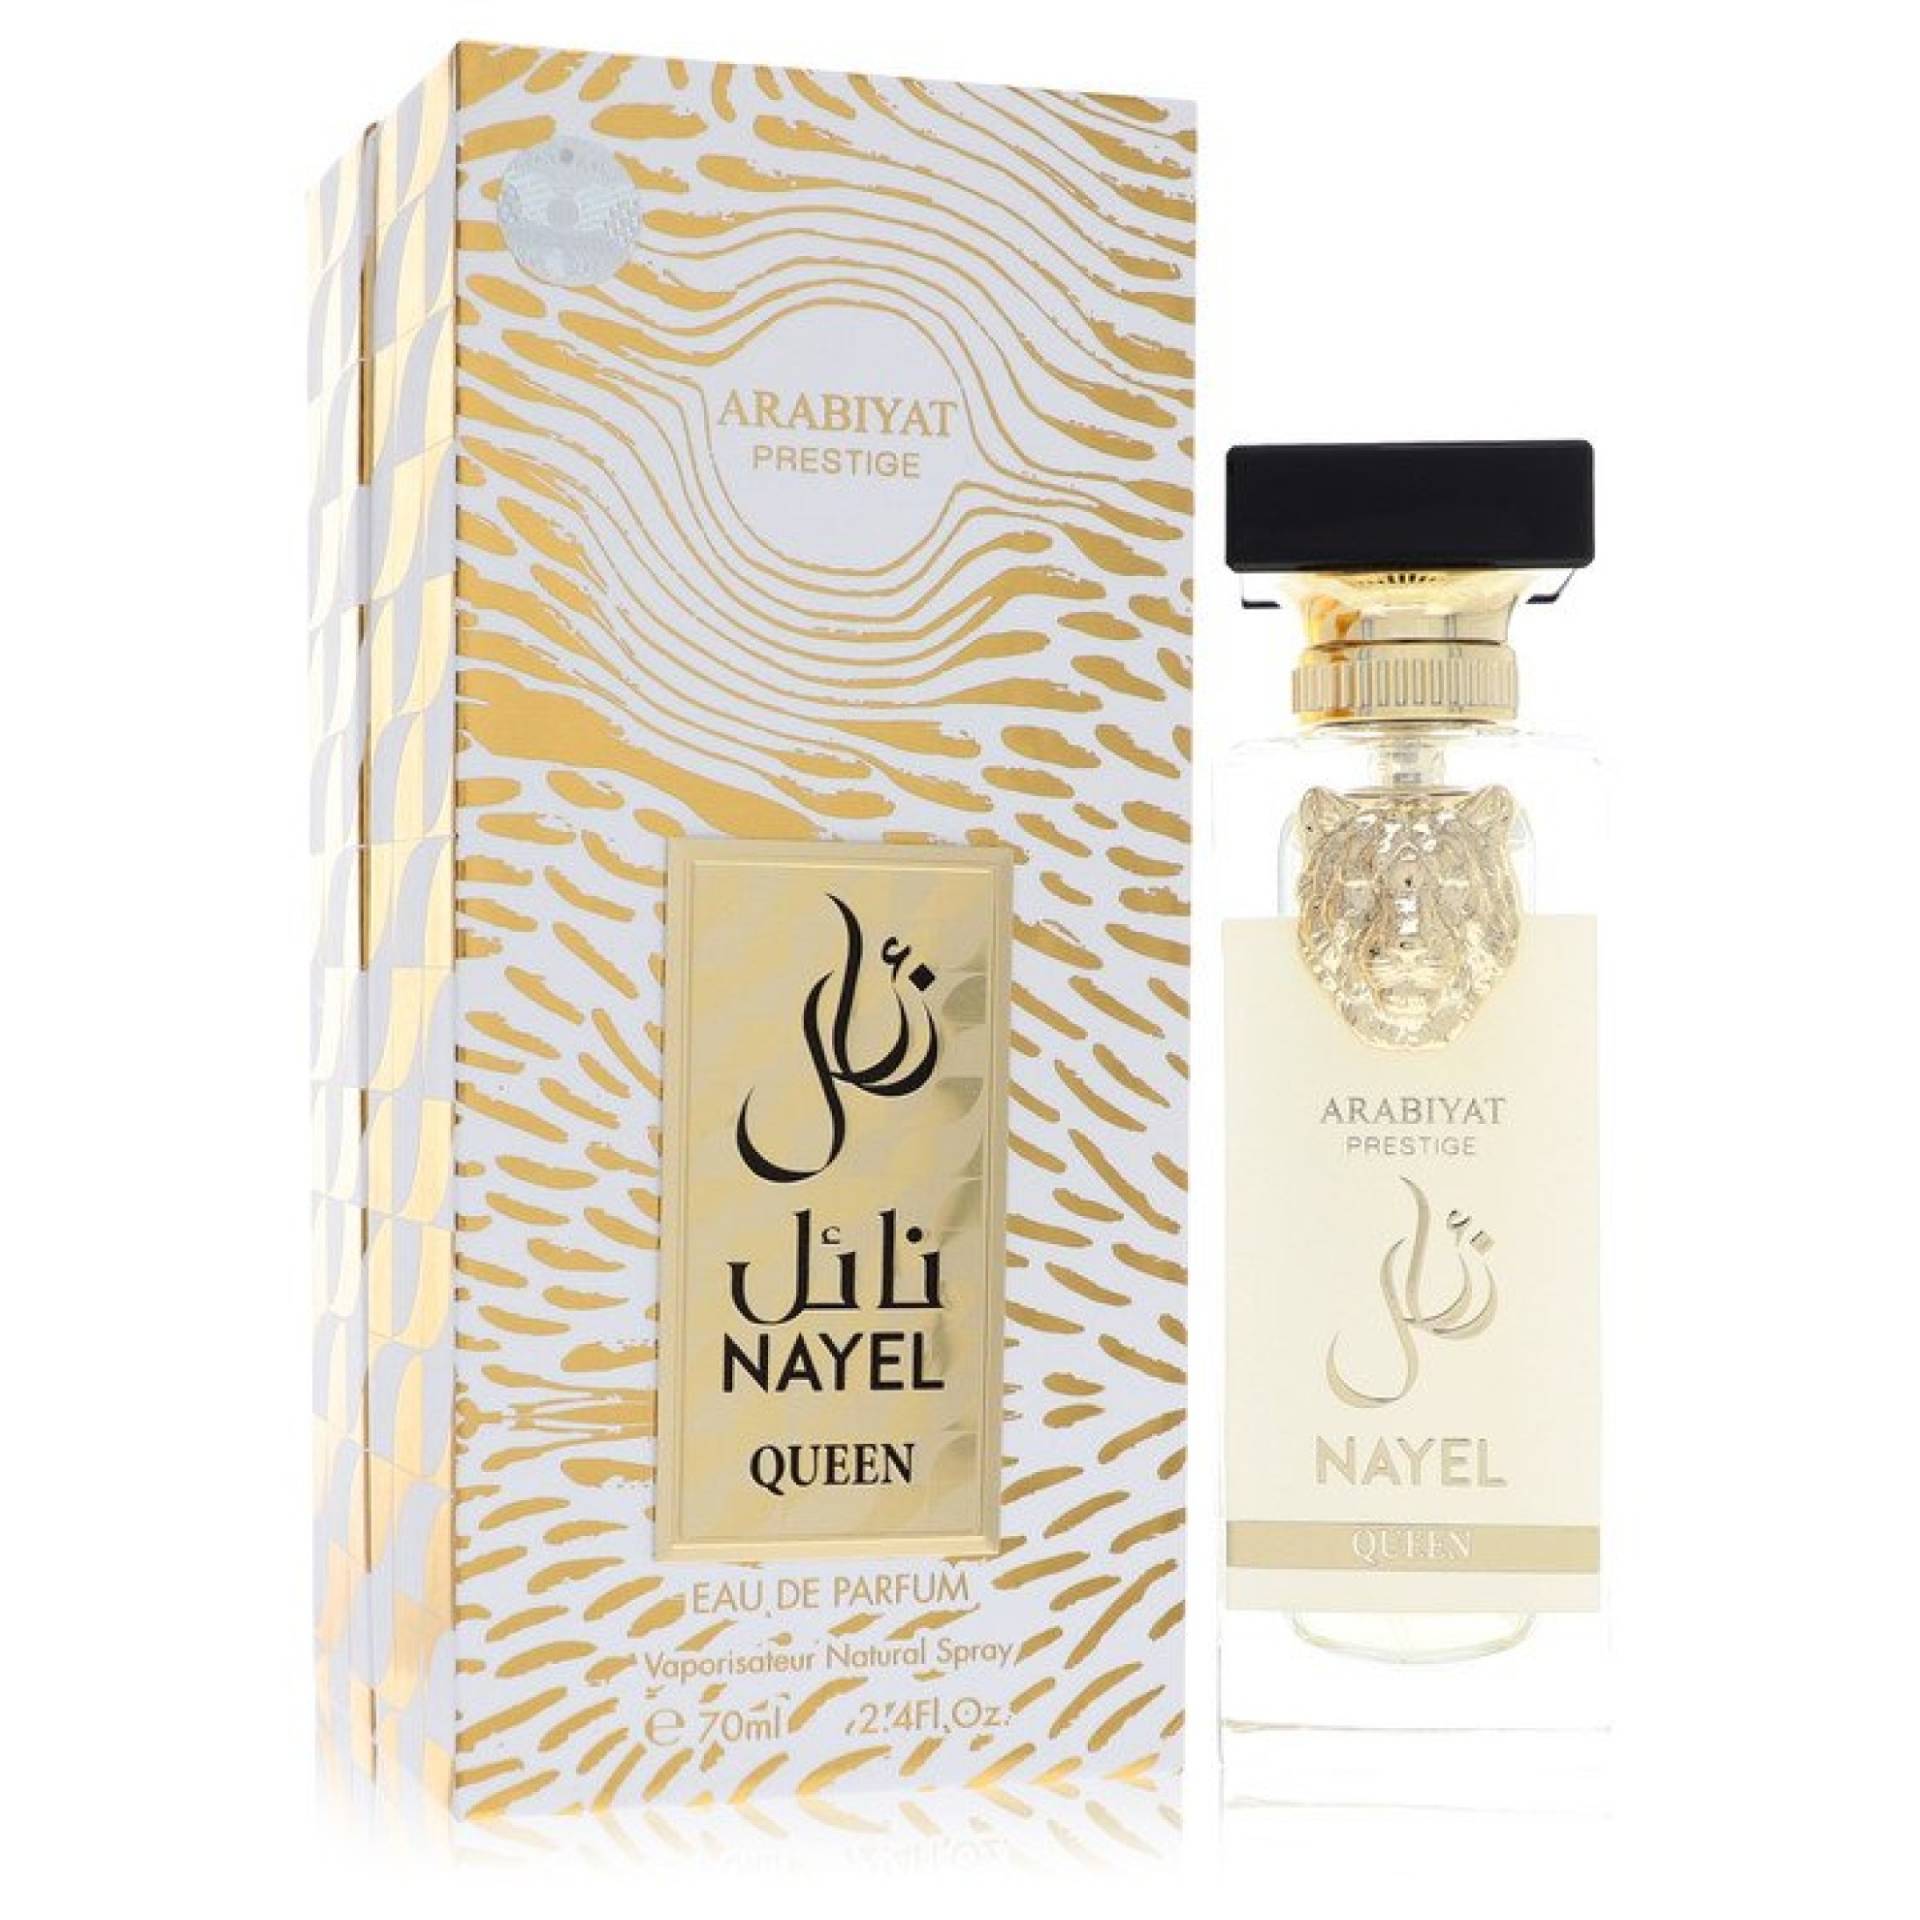 Arabiyat Prestige Nayel Queen Eau De Parfum Spray 71 ml von Arabiyat Prestige